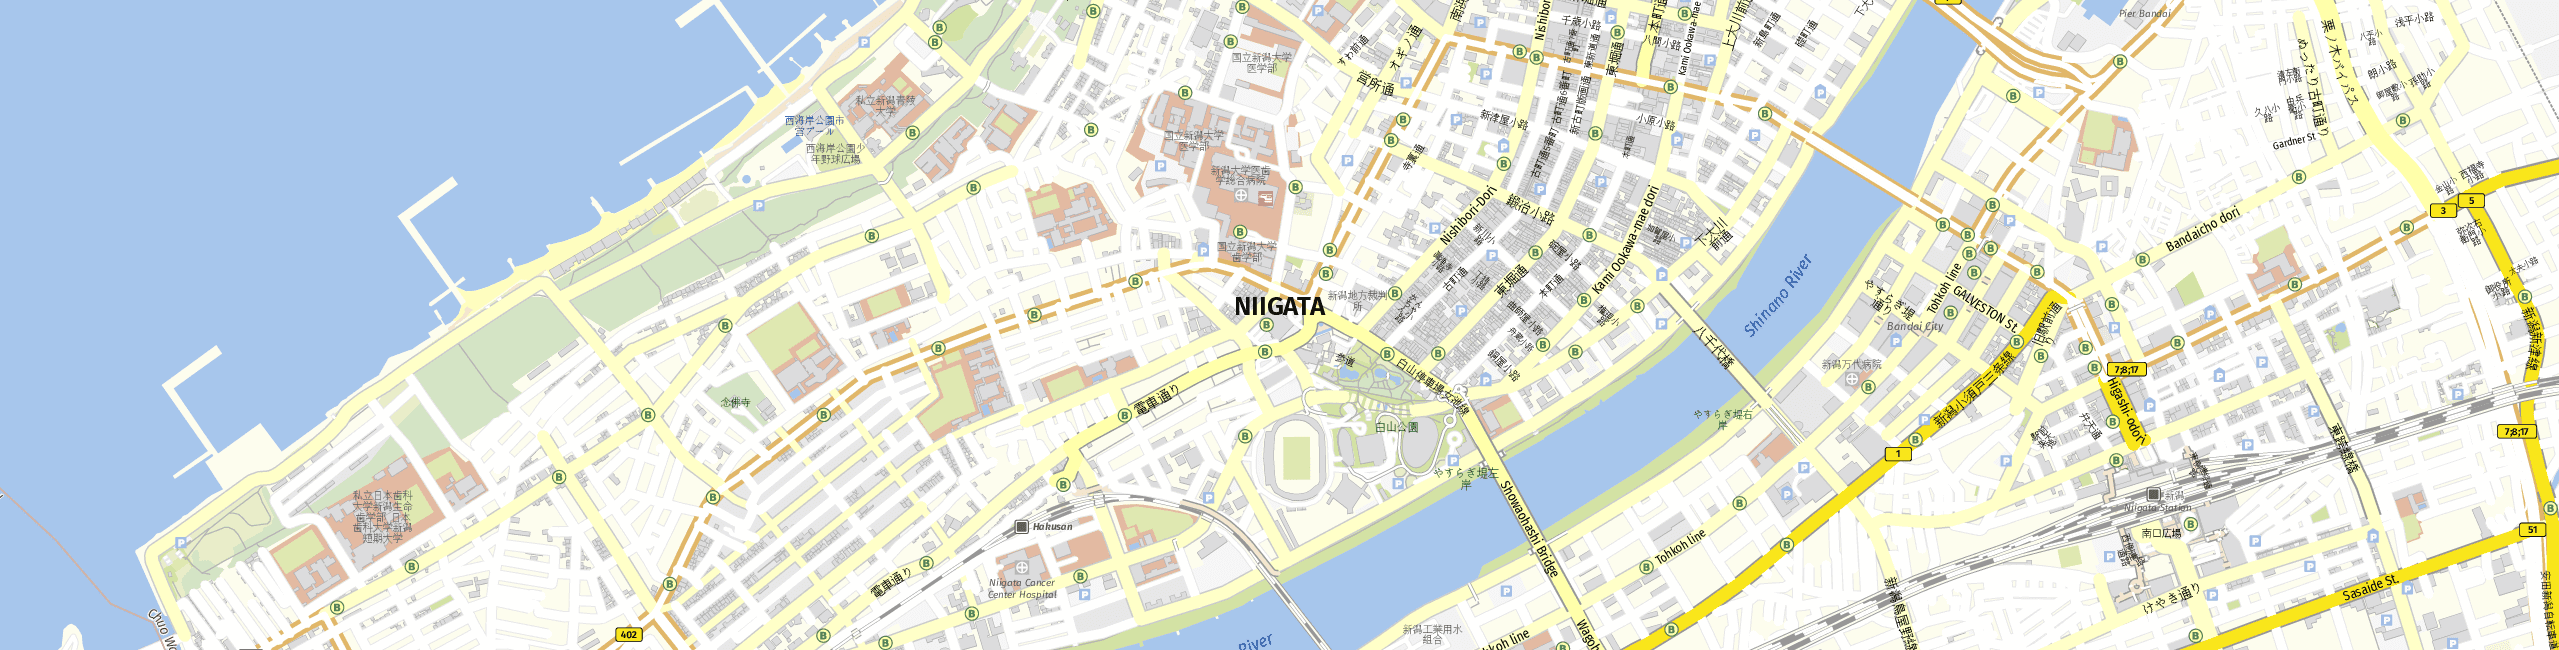 Stadtplan Niigata zum Downloaden.